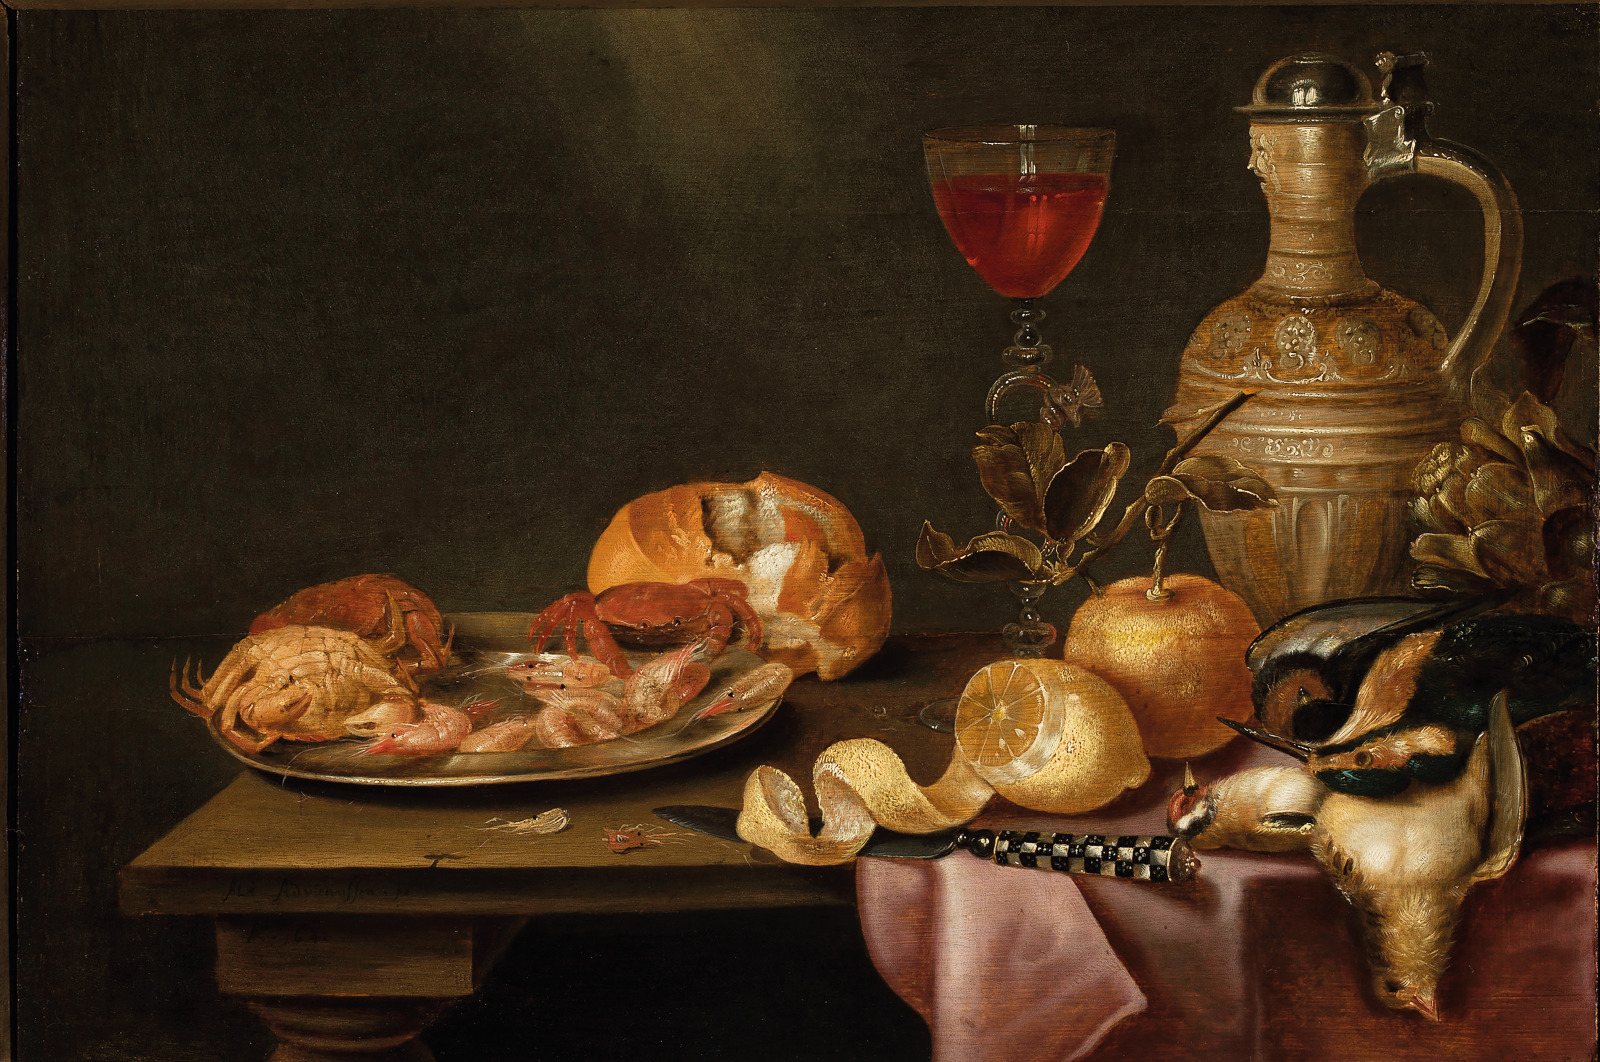 Alexandre ADRIAENSSEN (1578-1661, Anvers), Nature morte aux crevettes, crabes et citron, 1641, huile sur bois, 41,5 x 58 cm, Musée national de Varsovie (PL).